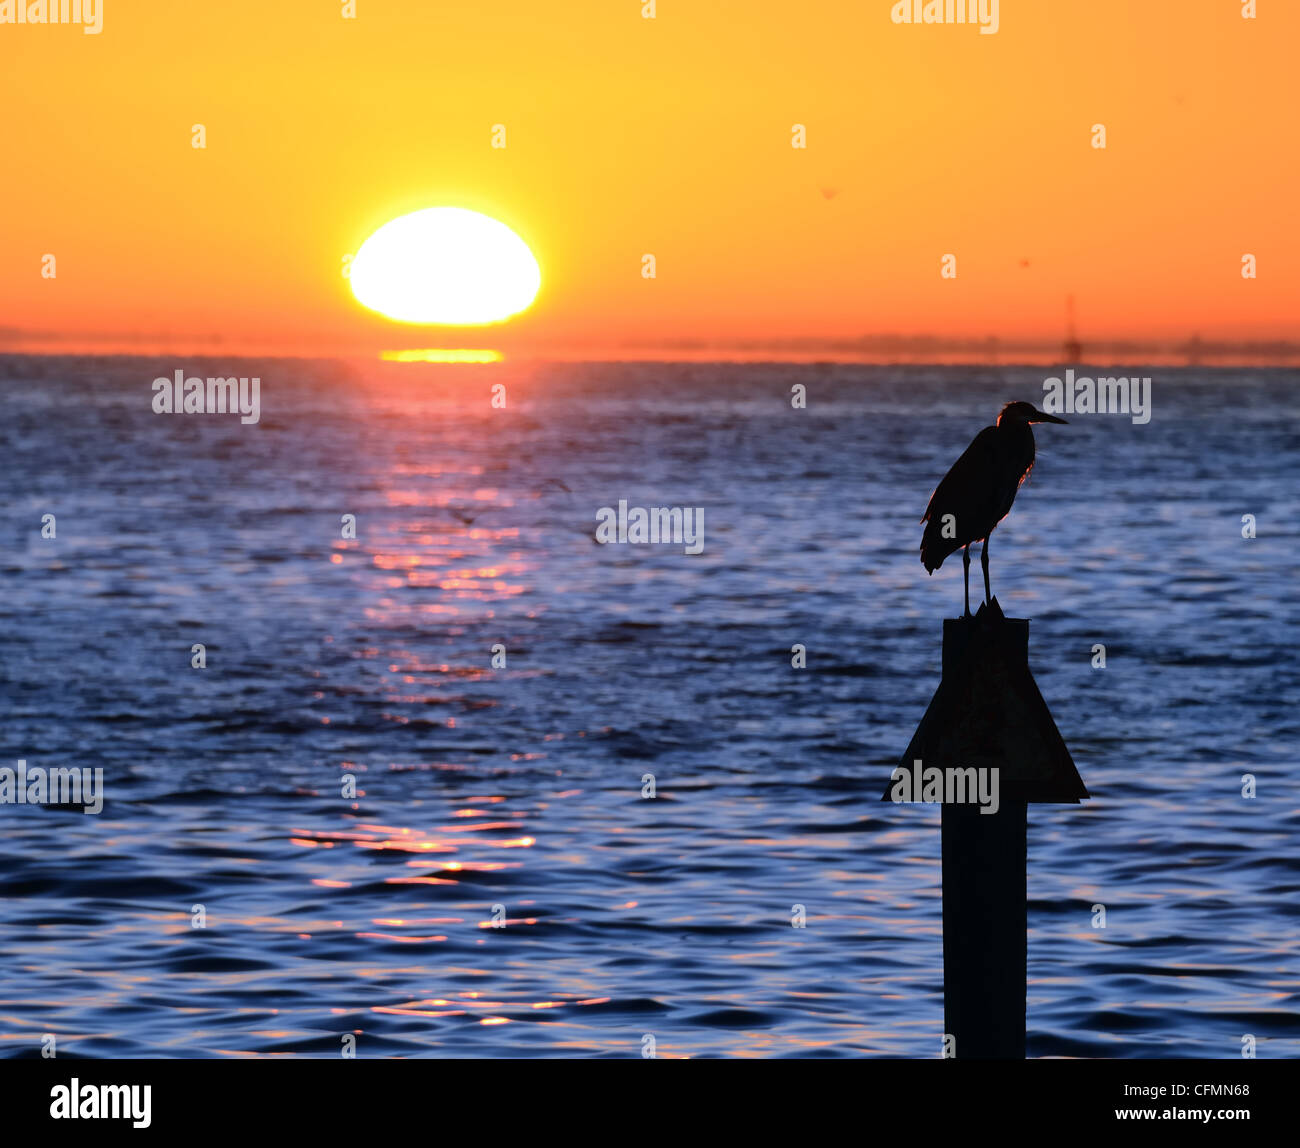 Sonnenaufgang über dem Wasser mit einem Vogel an einem Hochspannungsmast Stockfoto